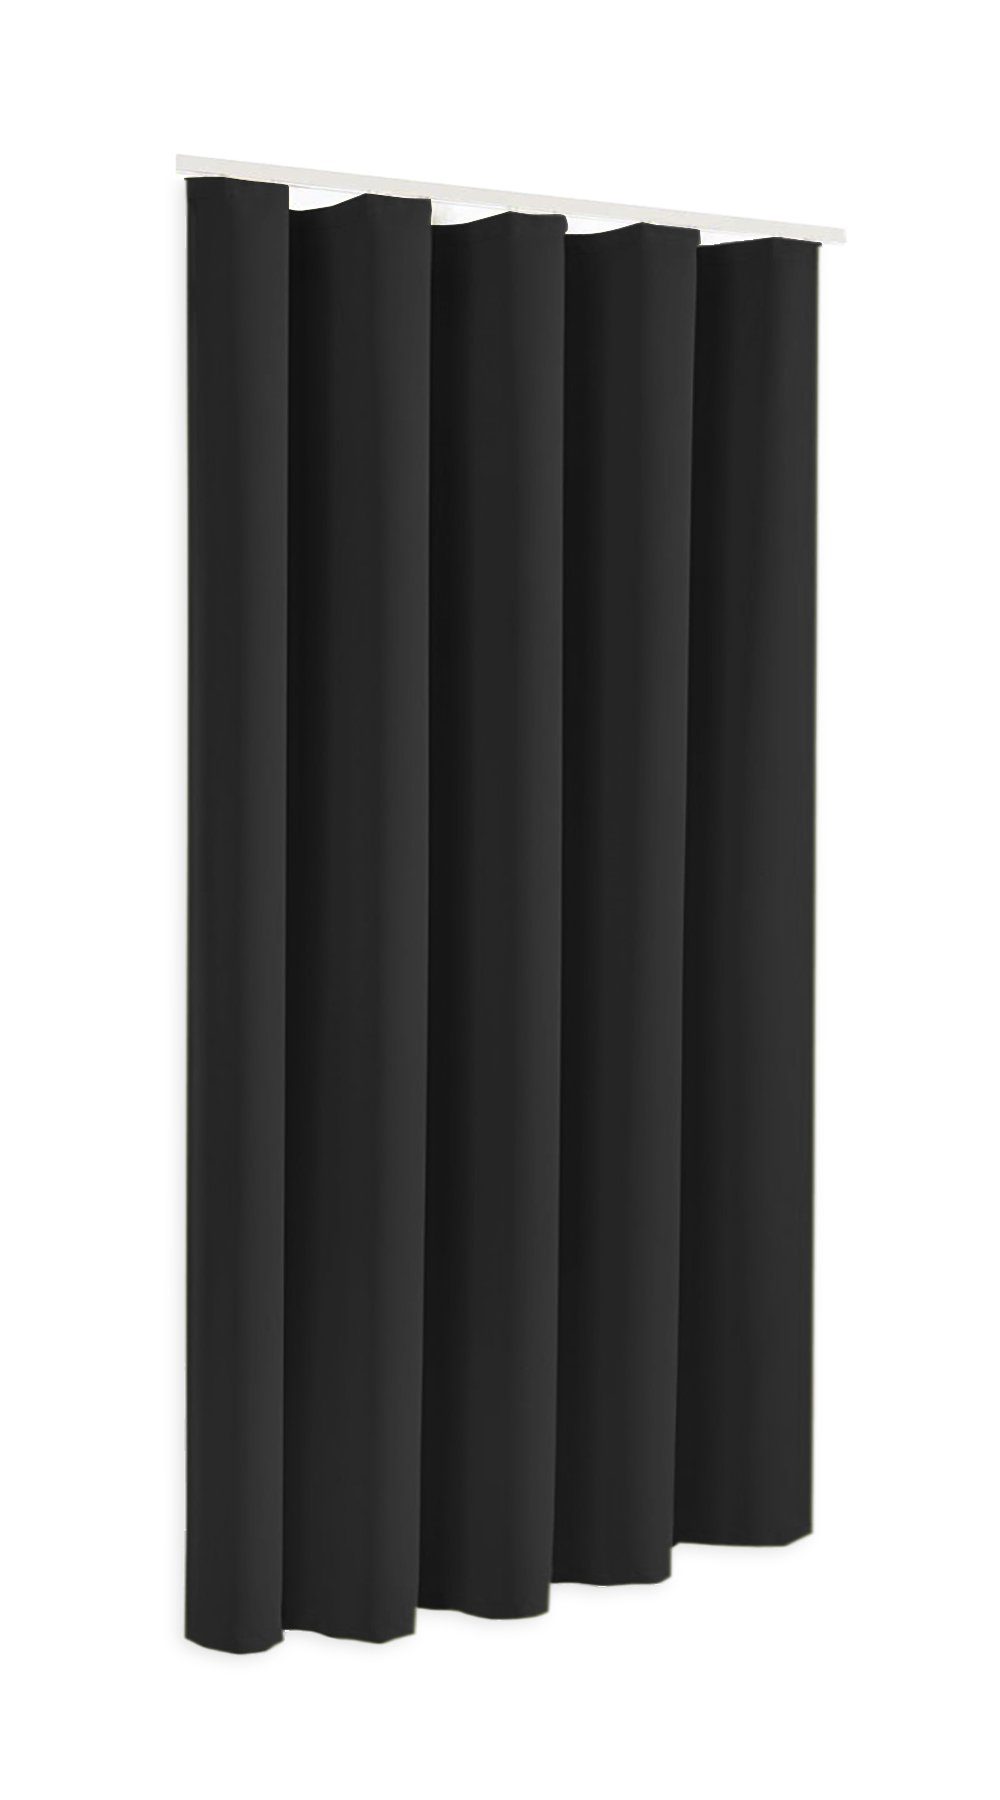 Verdunkelungsvorhang Blackout Verdunkelungsschal in Höhe 175cm oder 245cm, Modell Sopran, Farbe schwarz, blickdicht, Thermovorhang, Clever-Kauf-24